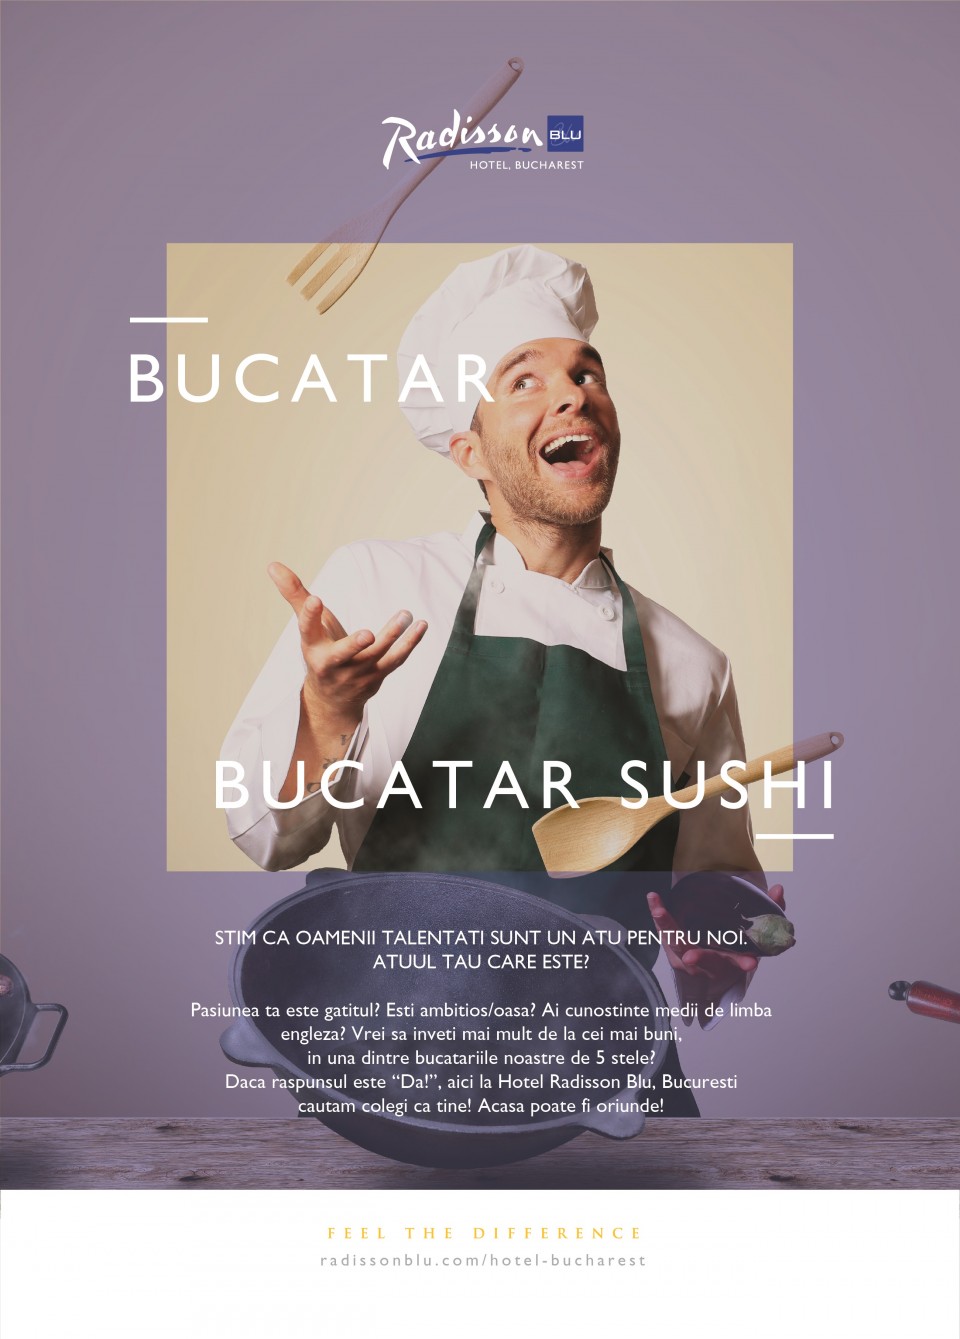 Bucatar/Bucatar sushi